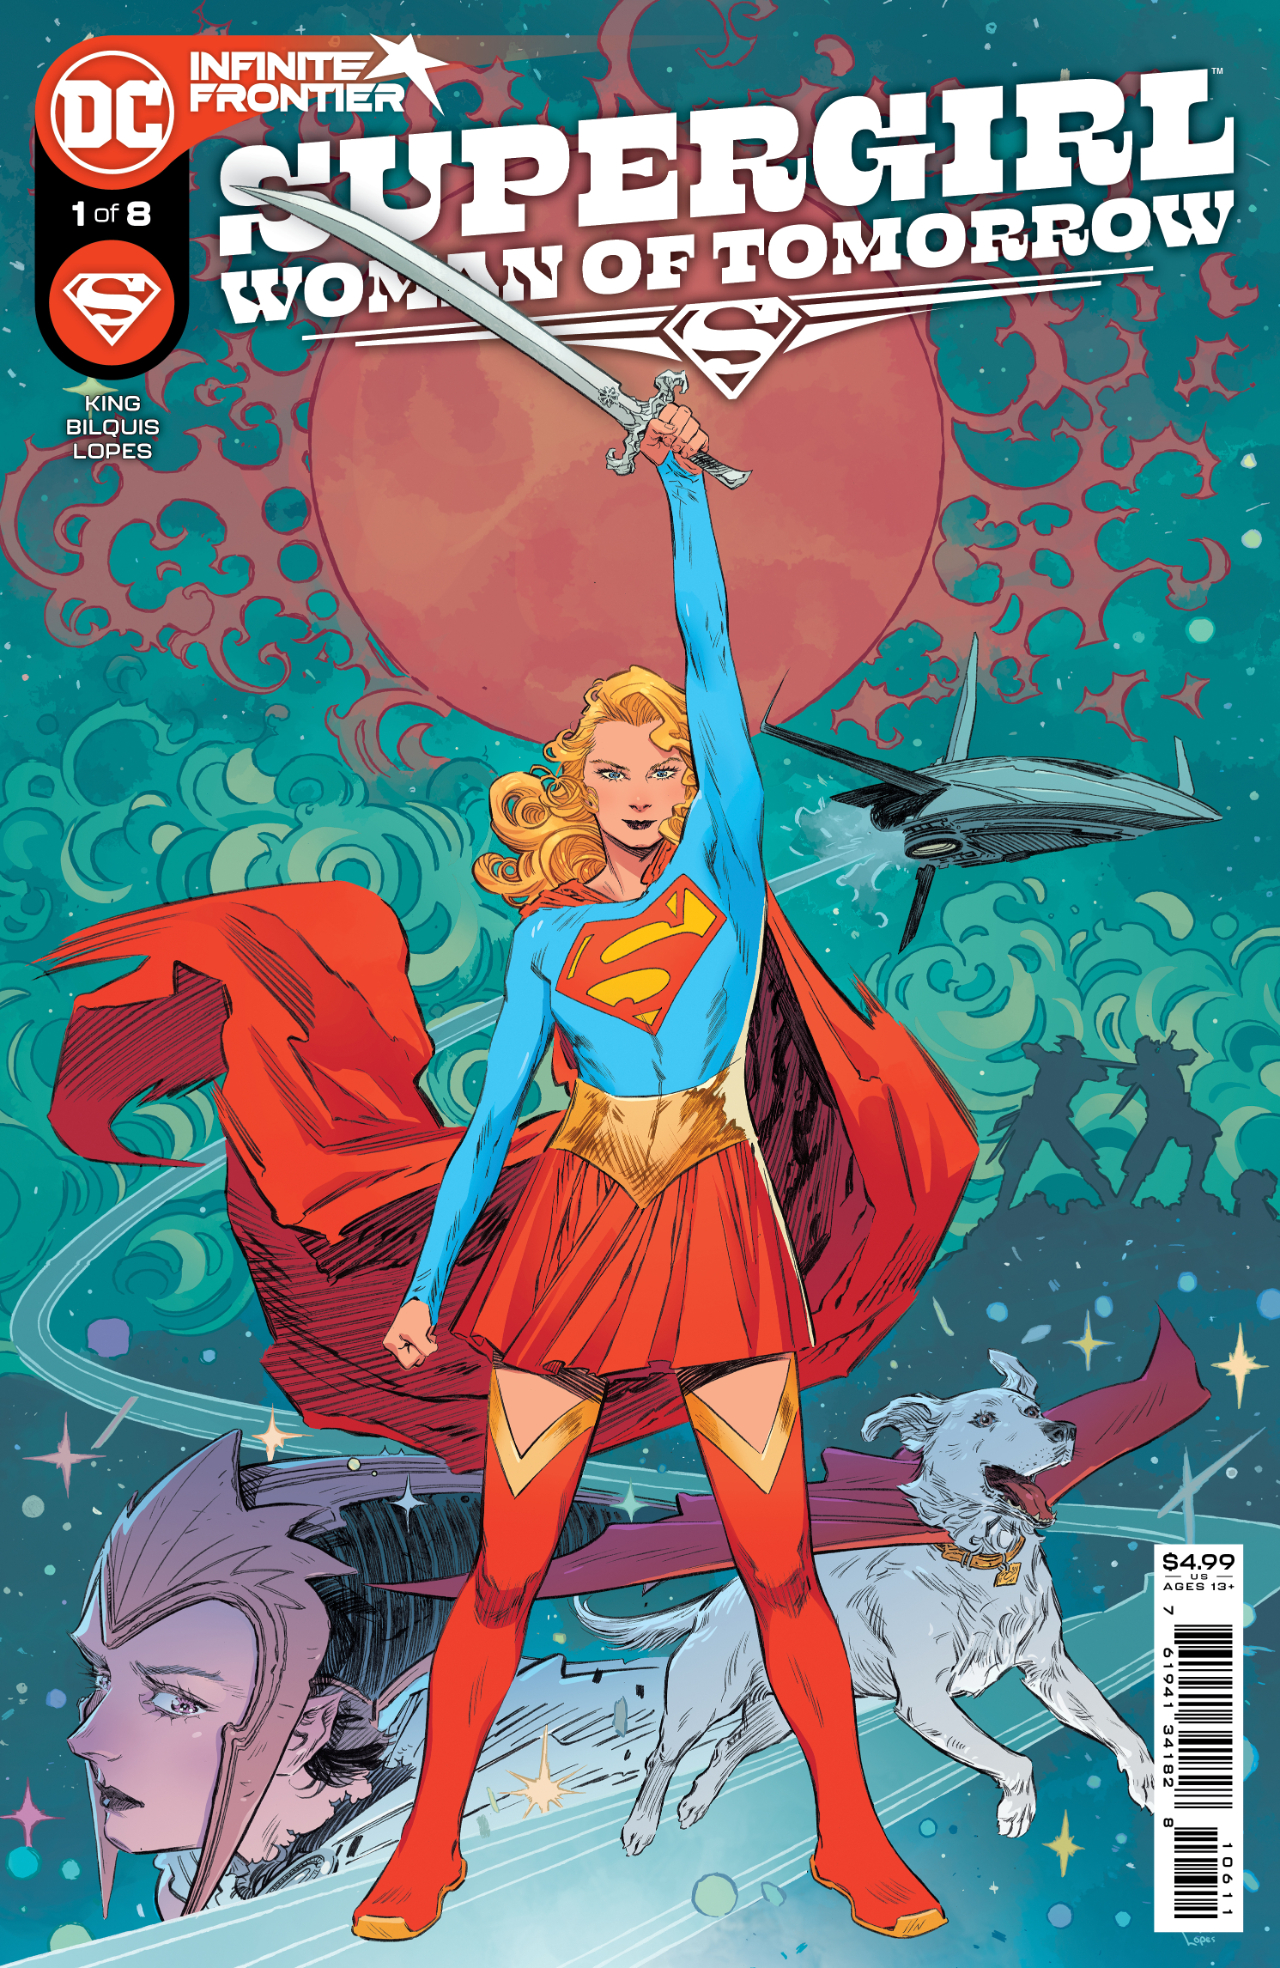 https://www.fortalezadelasoledad.com/imagenes/2023/02/05/Supergirl-woman-of-tomorrow-de-Tom-King.webp